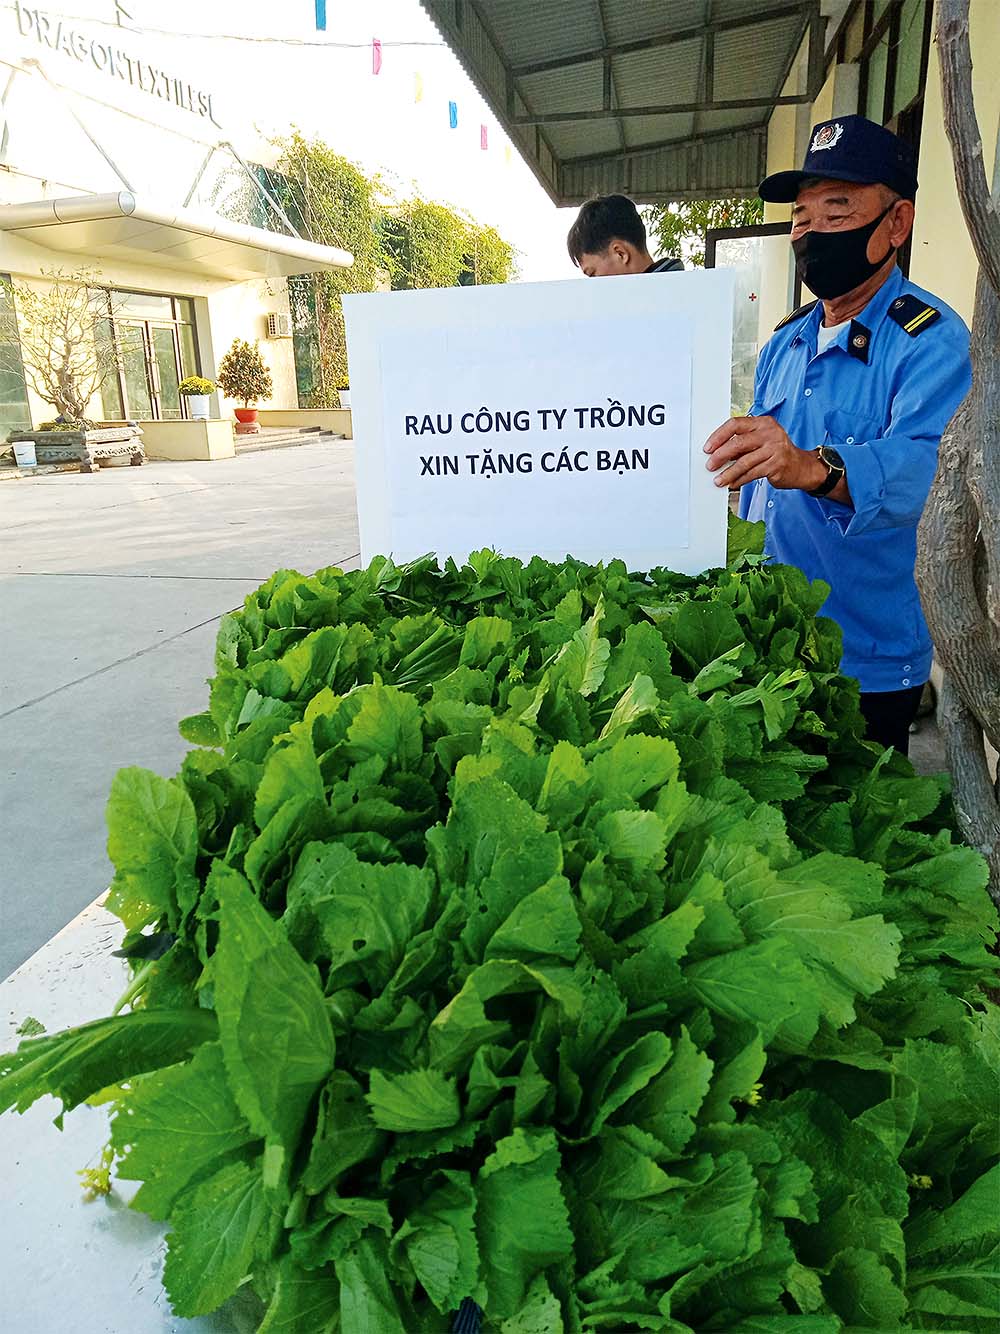 DragonTextiles 1 tăng gia sản xuất để cung cấp rau xanh cho người lao động trong mùa dịch 